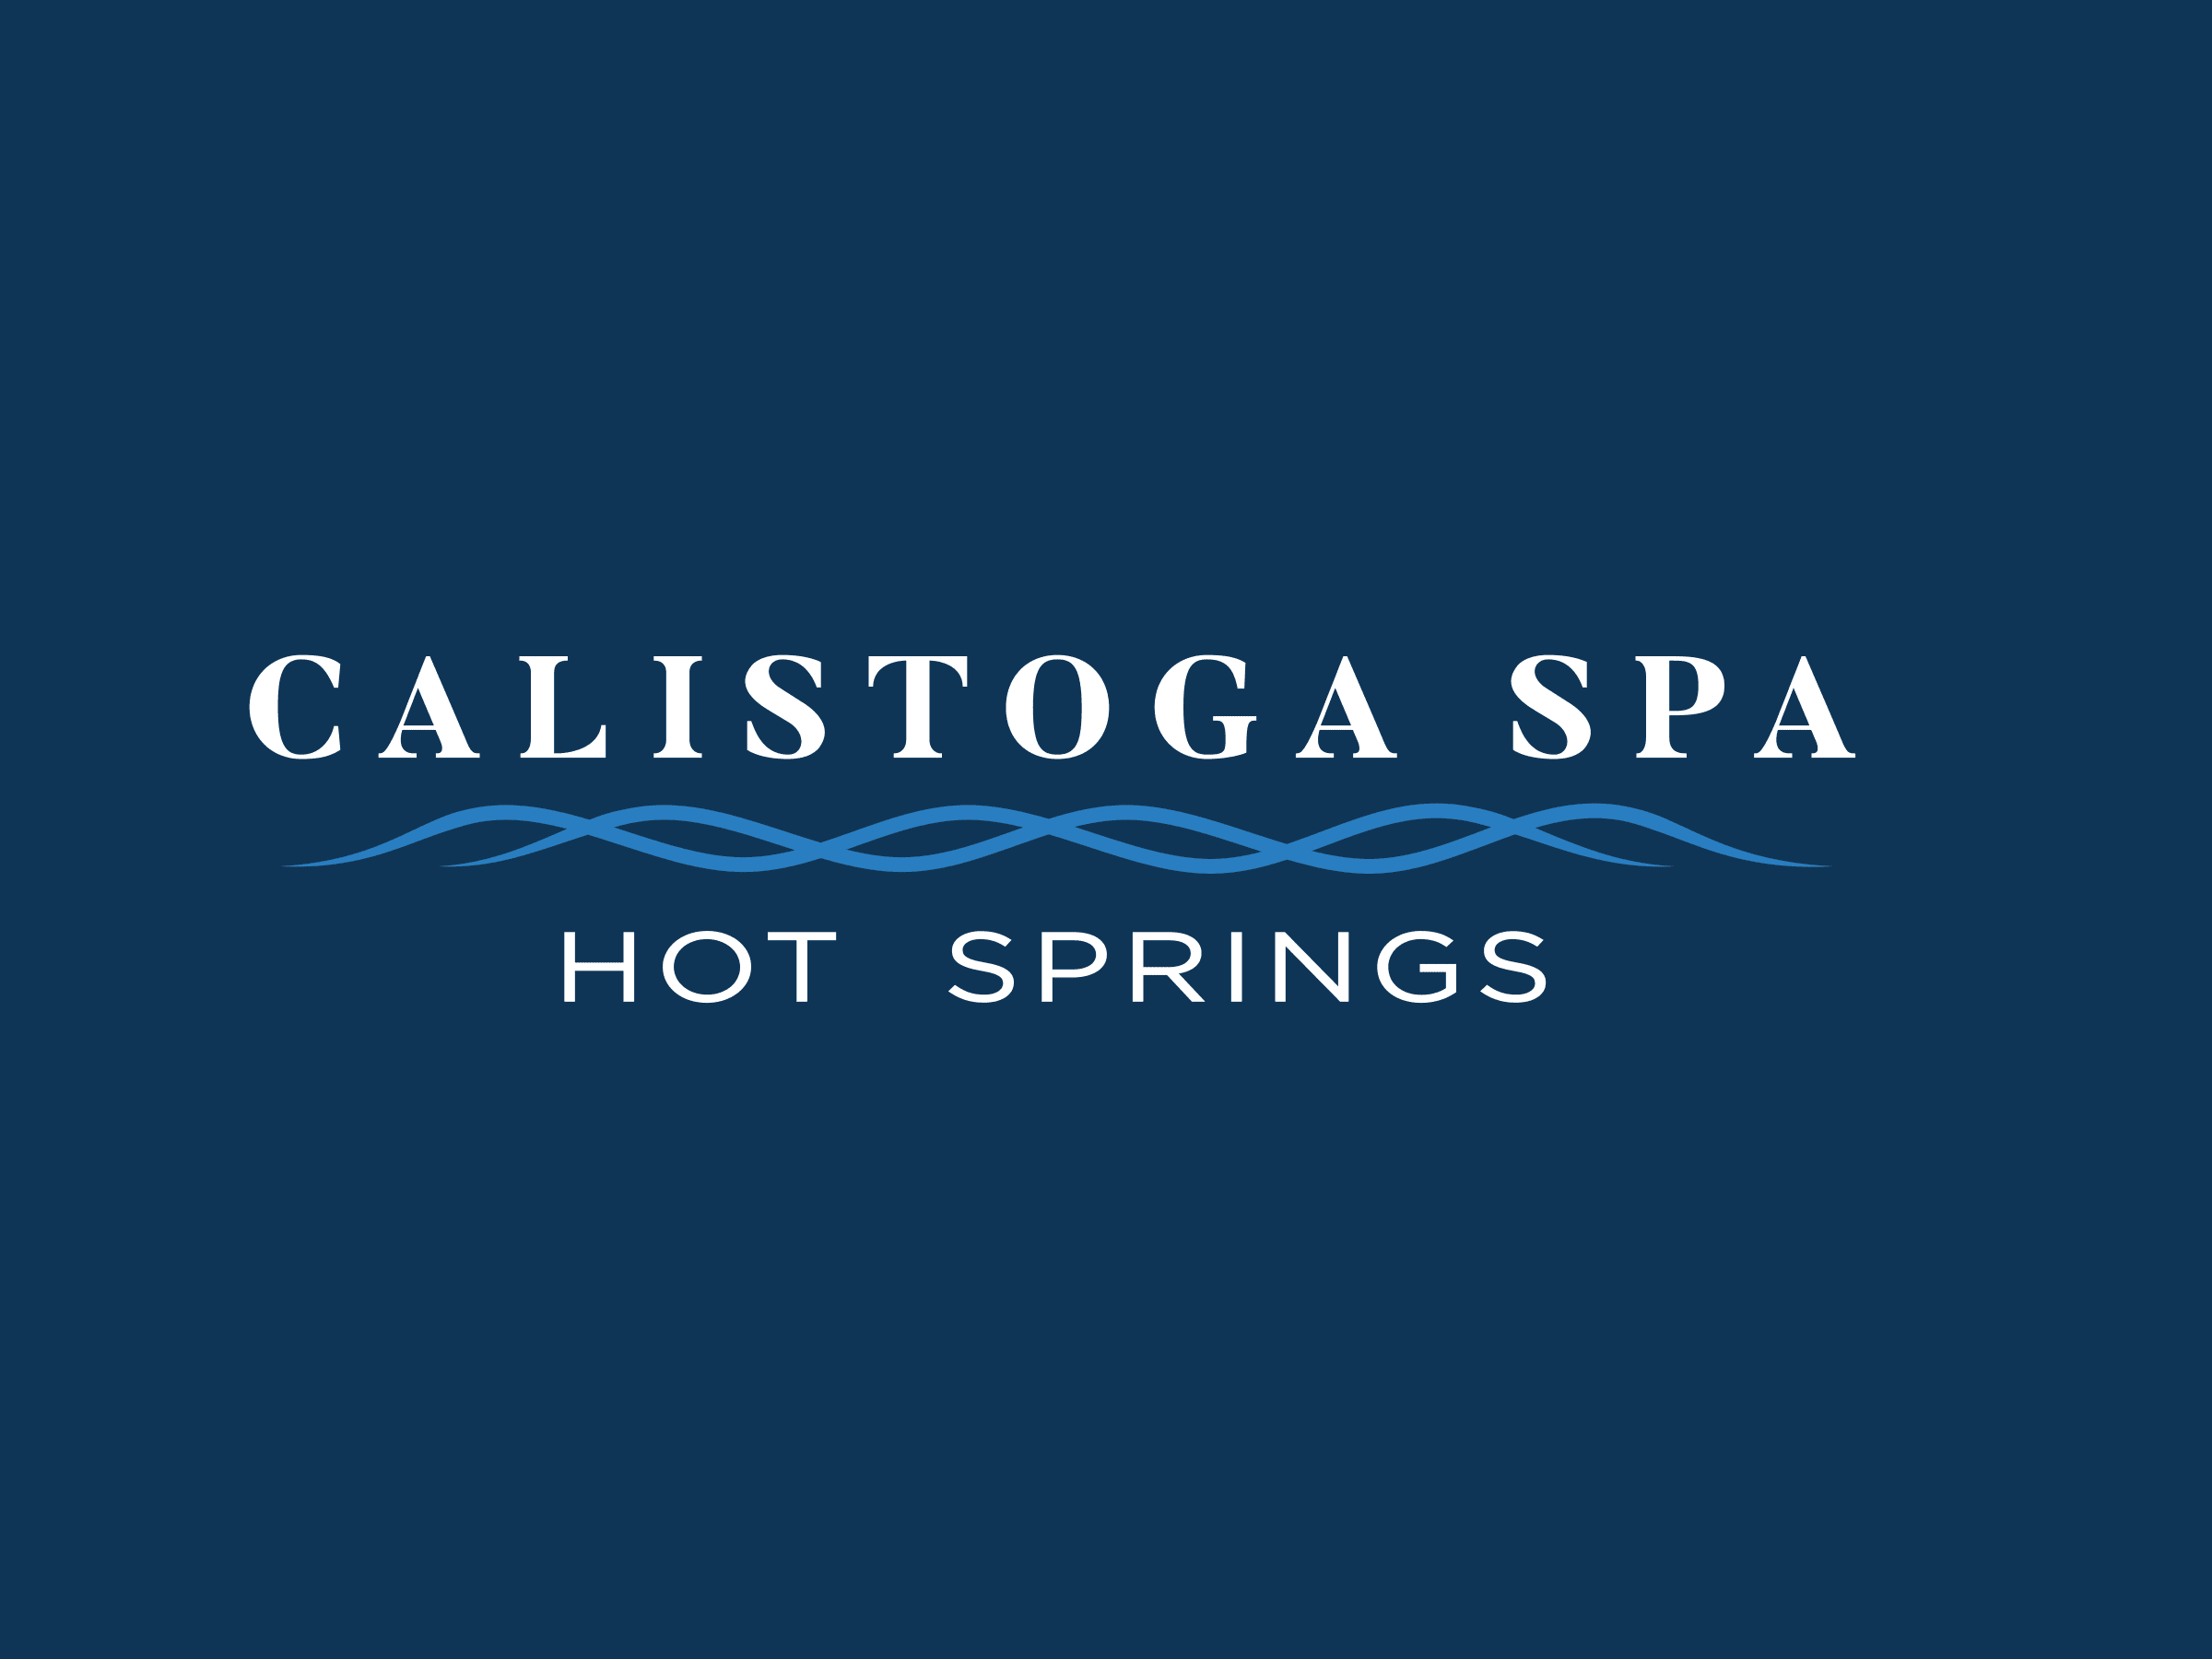 Calistoga Spa Hot Springs